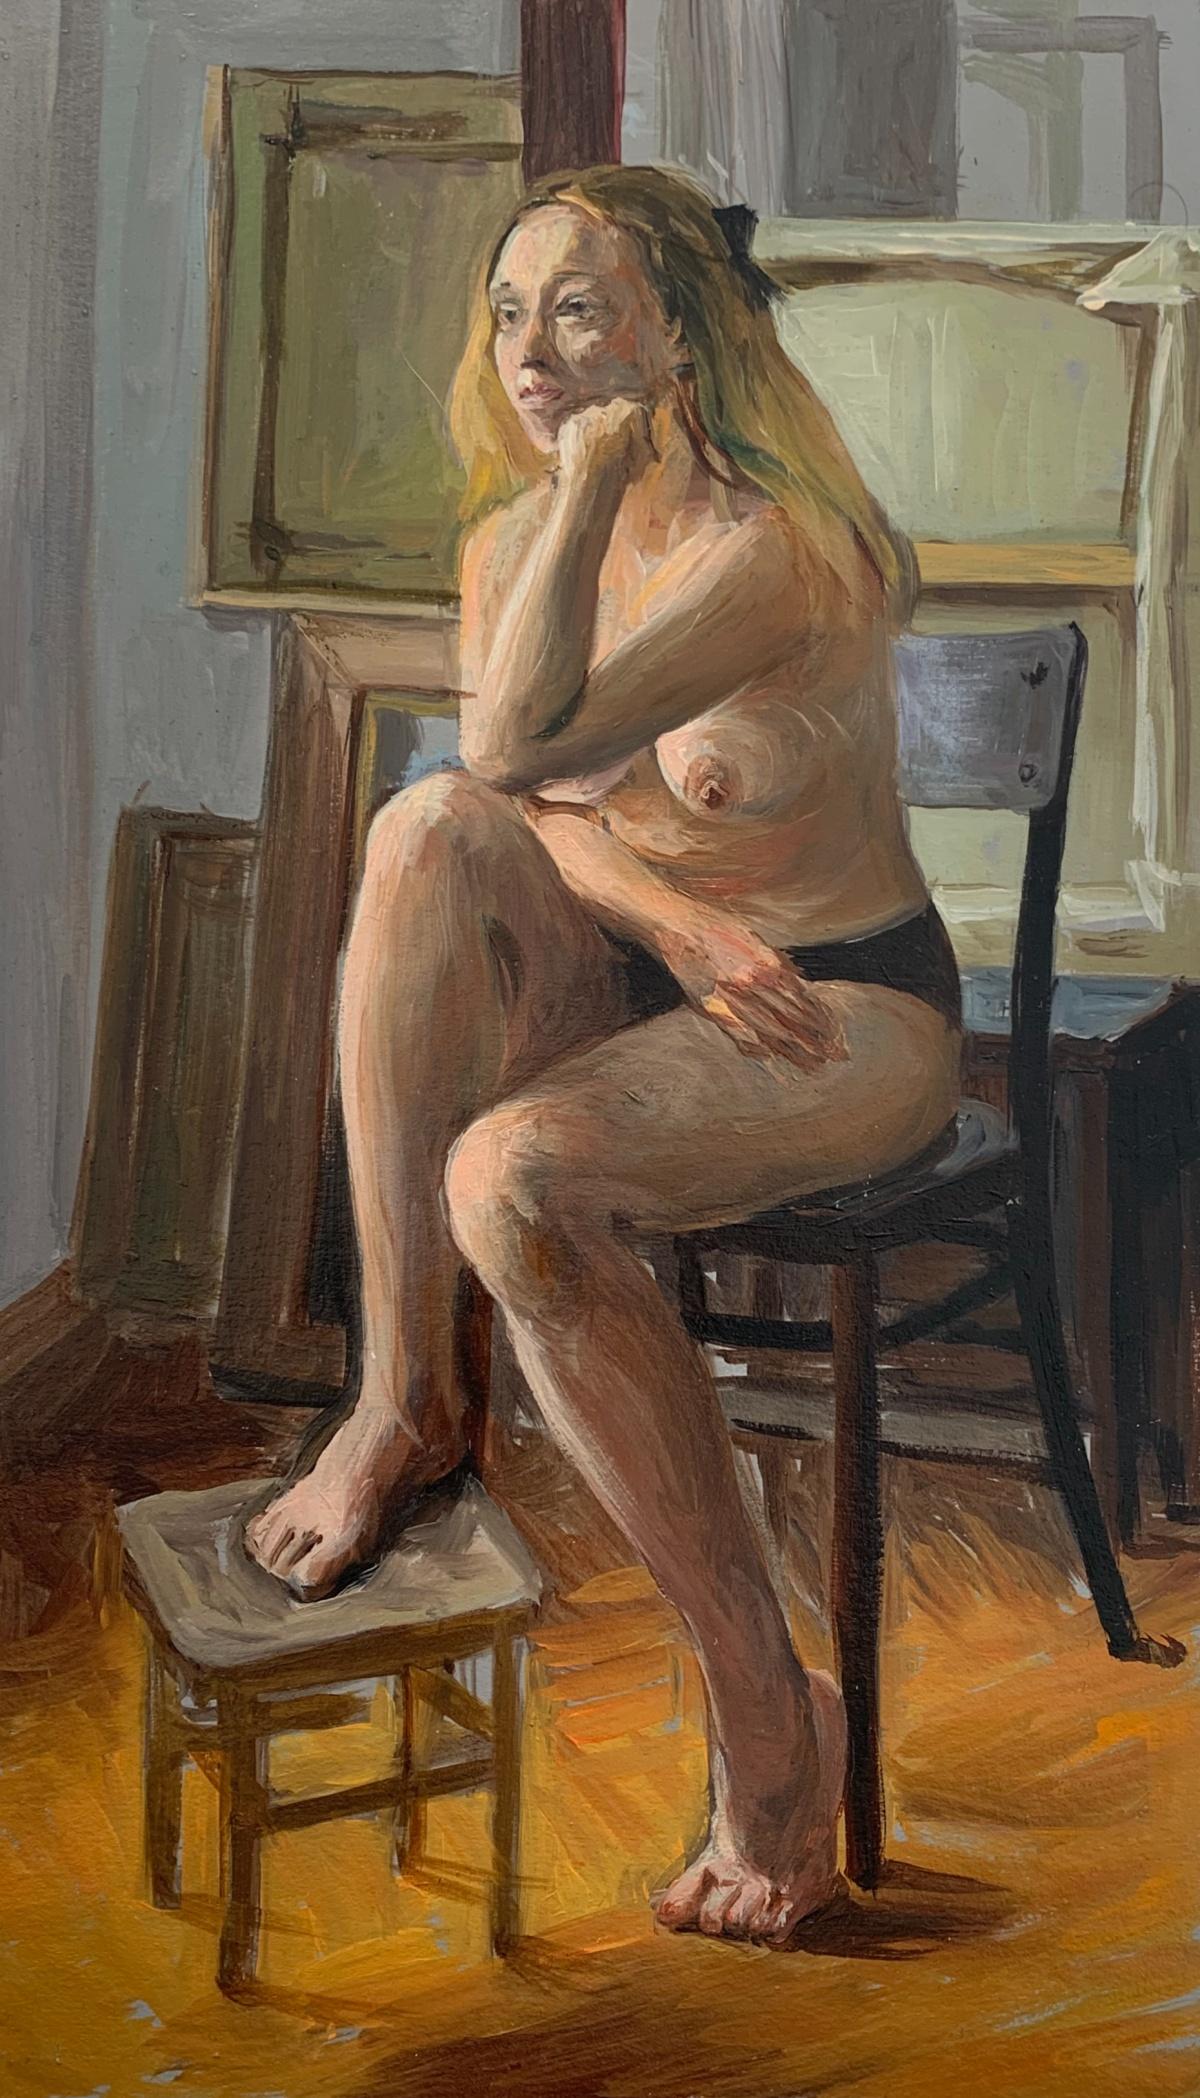 Nude Painting Agnieszka Staak-Janczarska - Peinture à l'huile réaliste représentant une femme nue, tons chauds, jeune artiste polonaise